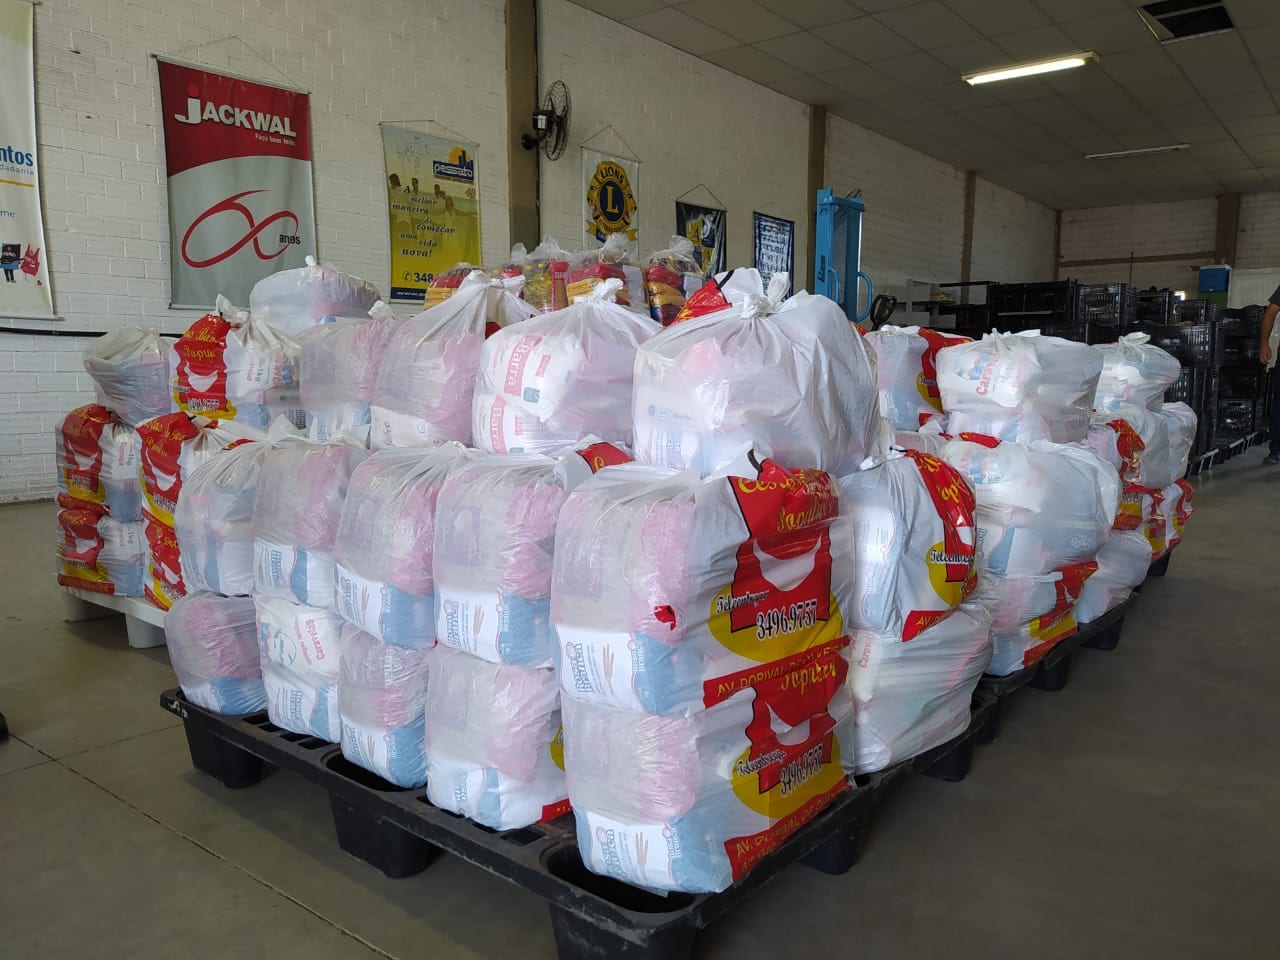 Vice-prefeito de Gravataí doa salário em cestas básicas ao Comitê de Solidariedade do município